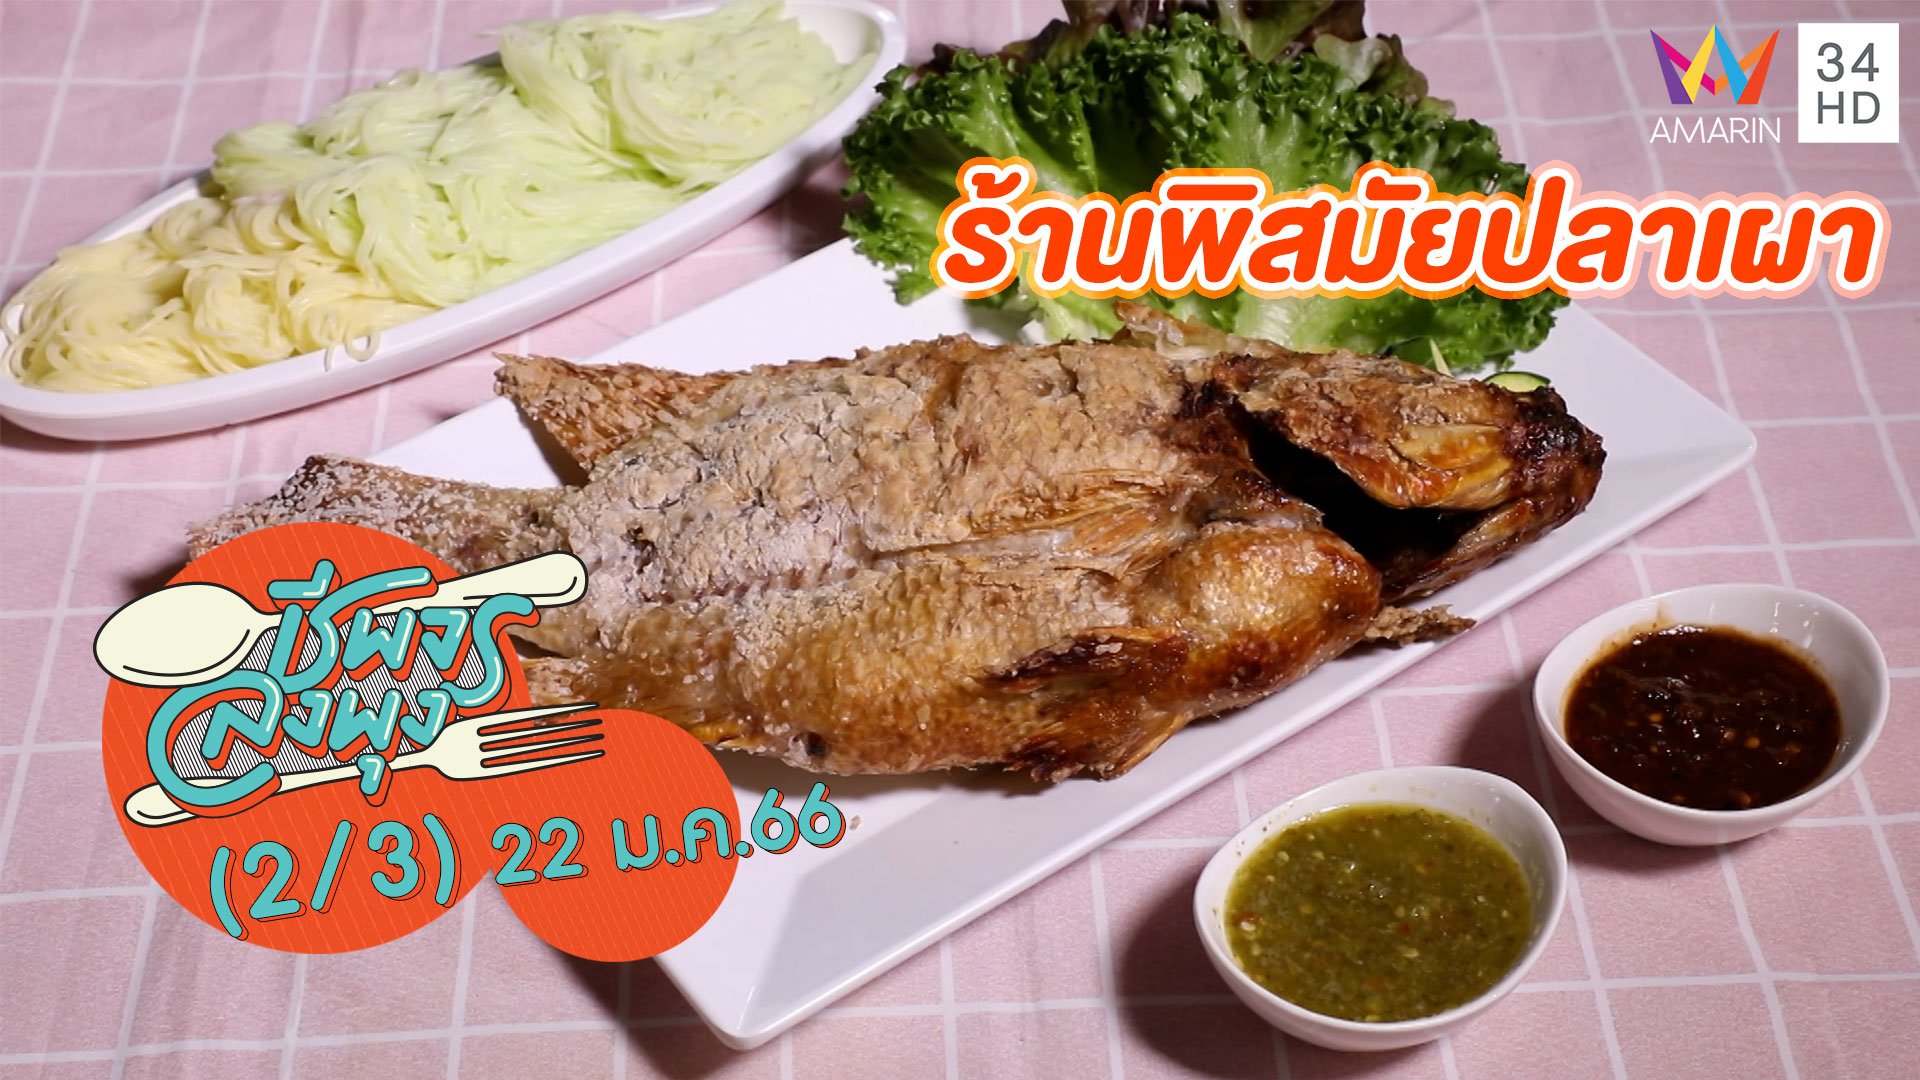 ปลาเผาตัวใหญ่ น้ำจิ้มสูตรเด็ด @ ร้านพิสมัยปลาเผา | ชีพจรลงพุง | 22 ม.ค. 66 (2/3) | AMARIN TVHD34